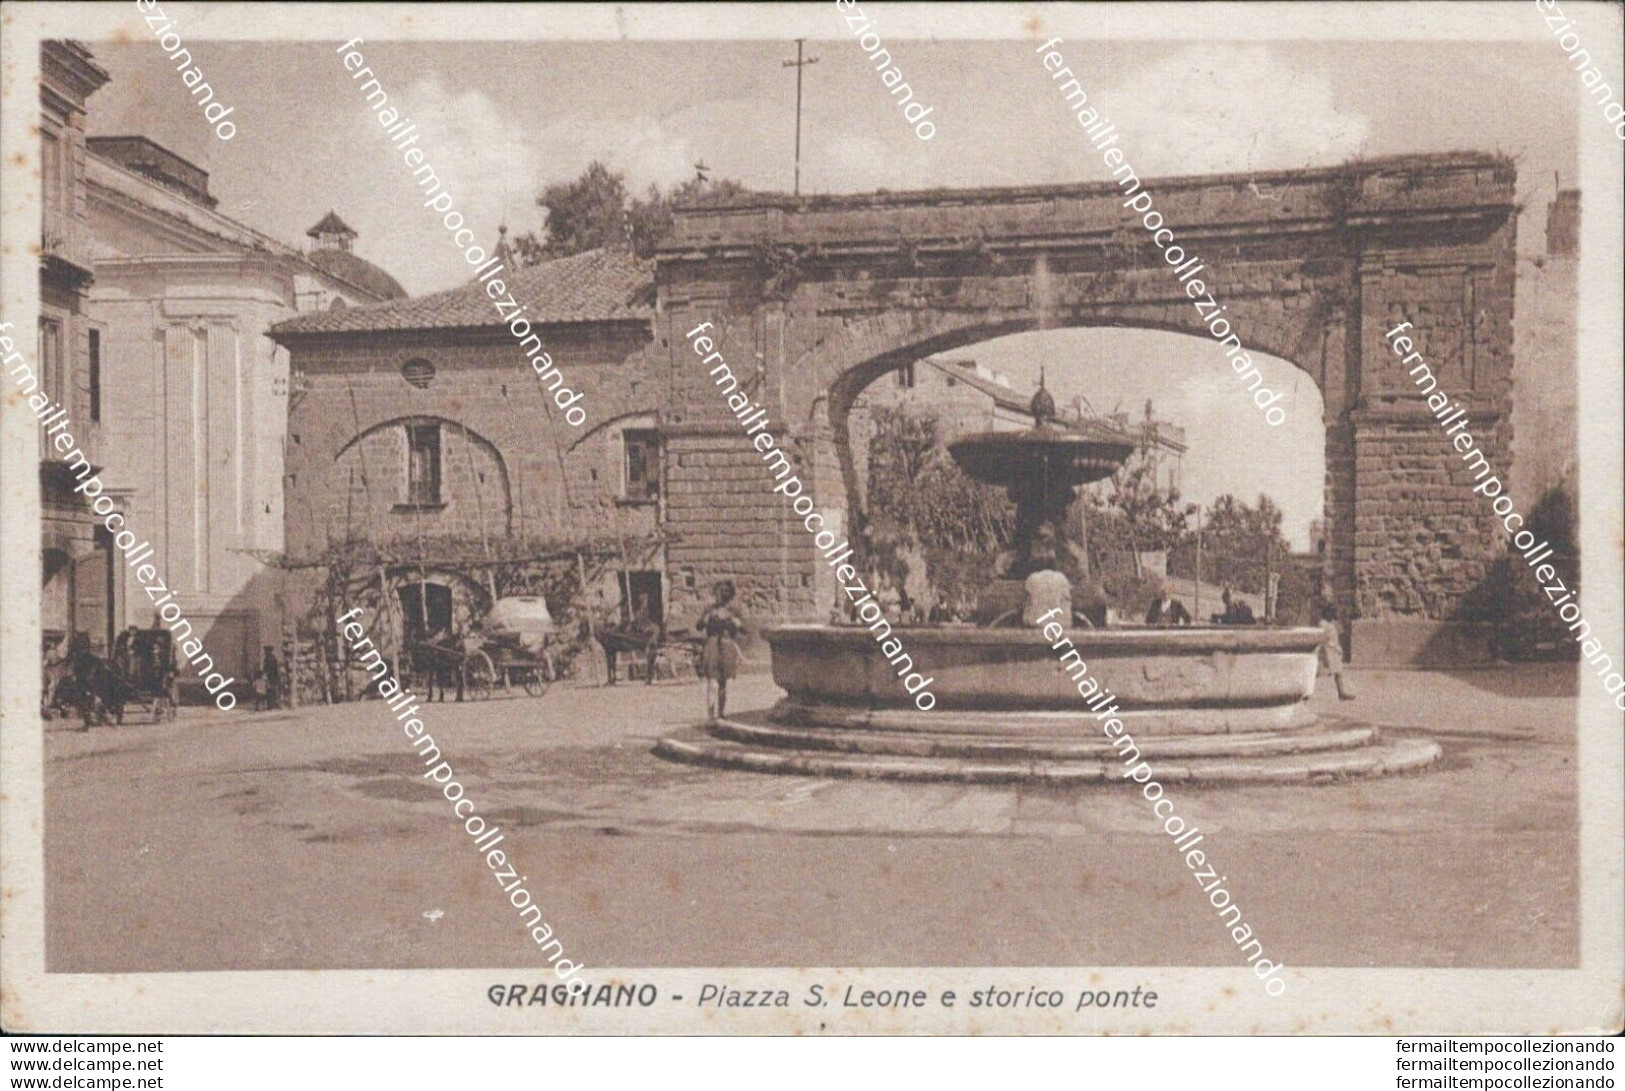 At61 Cartolina Gragnano Piazza S.leone E Storico Ponte 1939 Provincia Di Napoli - Napoli (Napels)